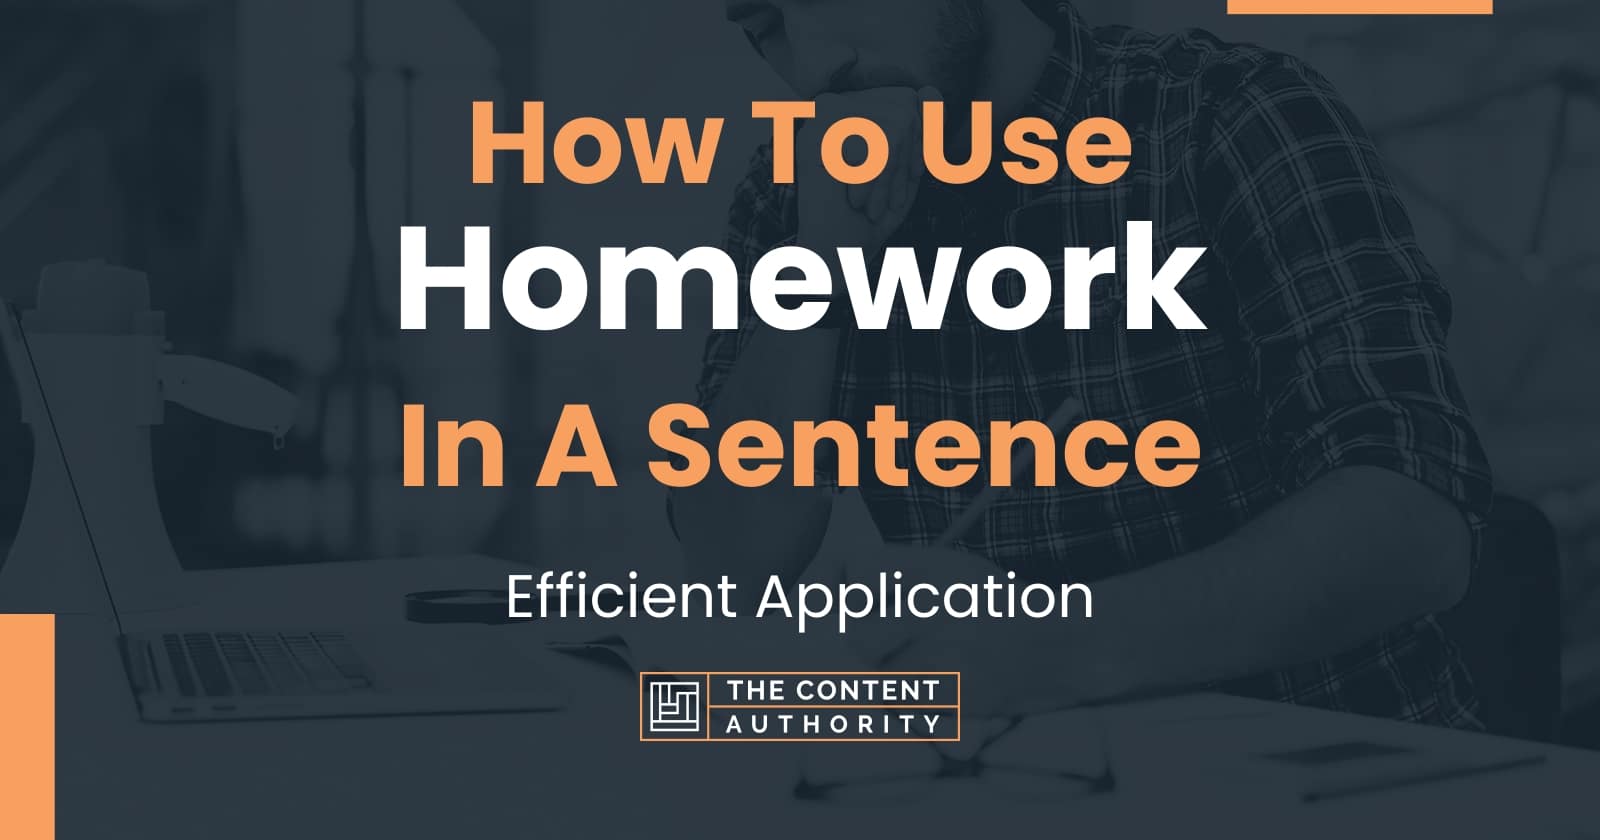 homework sentence meaning